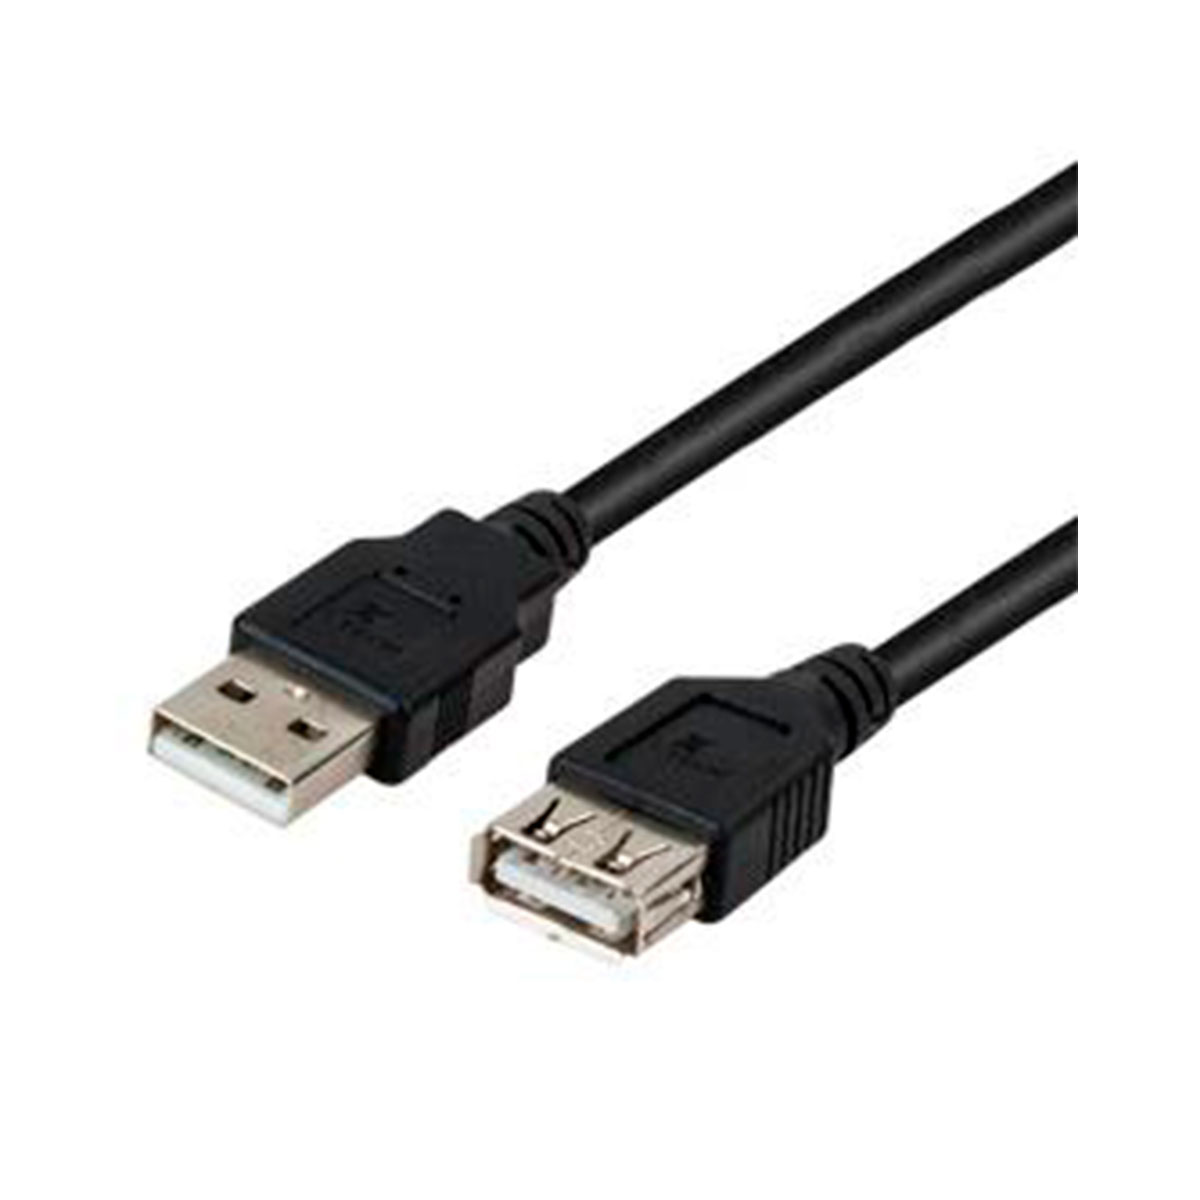 XTC-306 XTECH                                                        | CABLE USB 20 MACHO A USB HERMBRA 4.5 METROS                                                                                                                                                                                                     